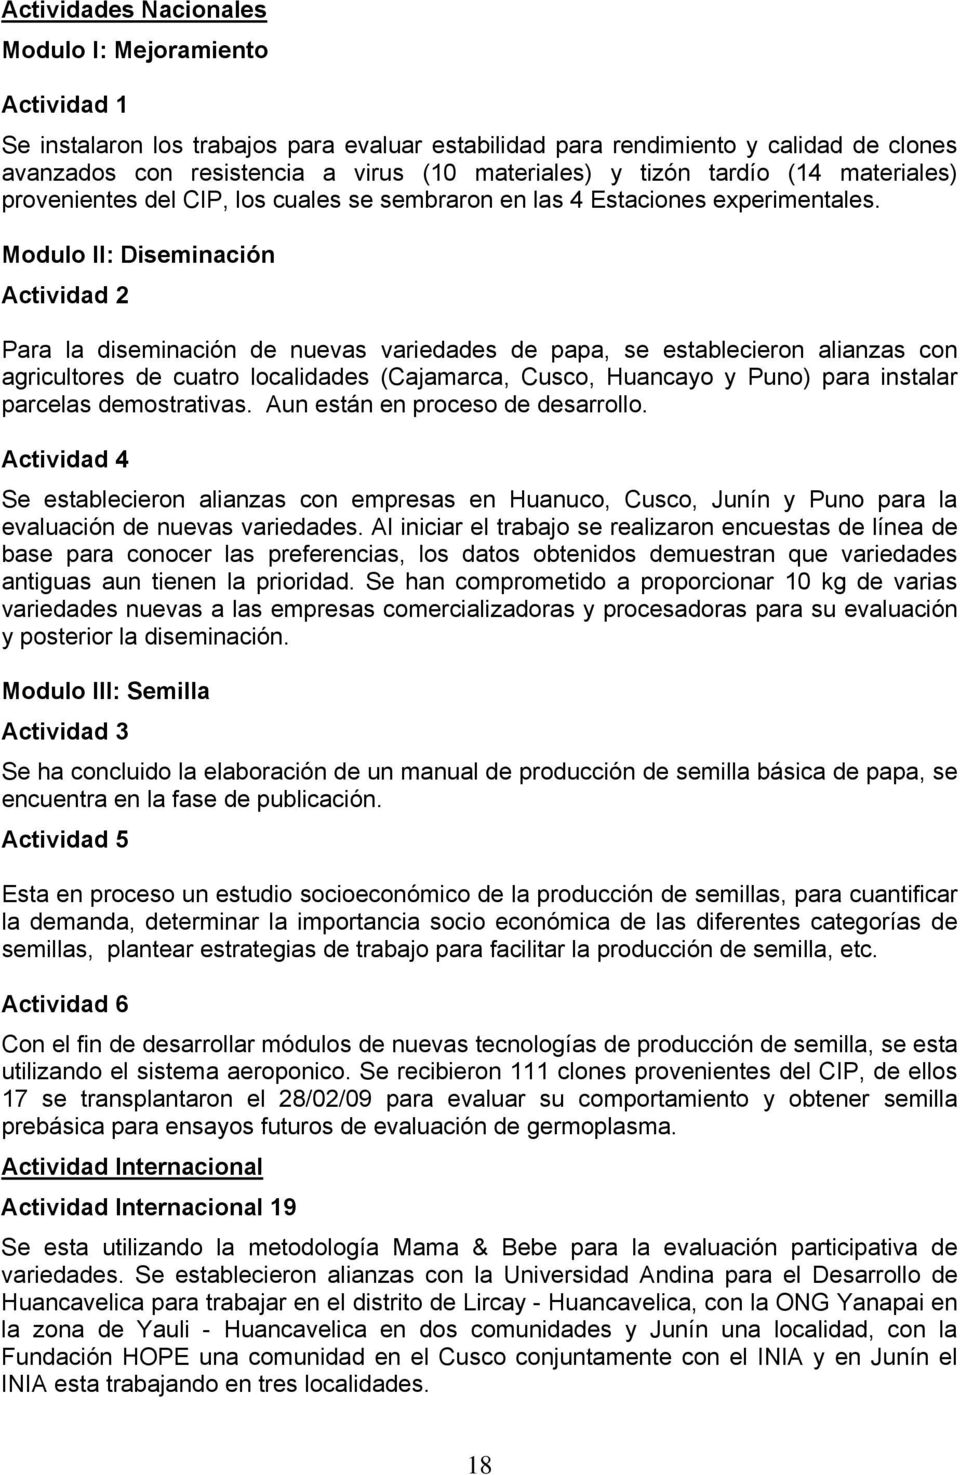 Modulo II: Diseminación Actividad 2 Para la diseminación de nuevas variedades de papa, se establecieron alianzas con agricultores de cuatro localidades (Cajamarca, Cusco, Huancayo y Puno) para